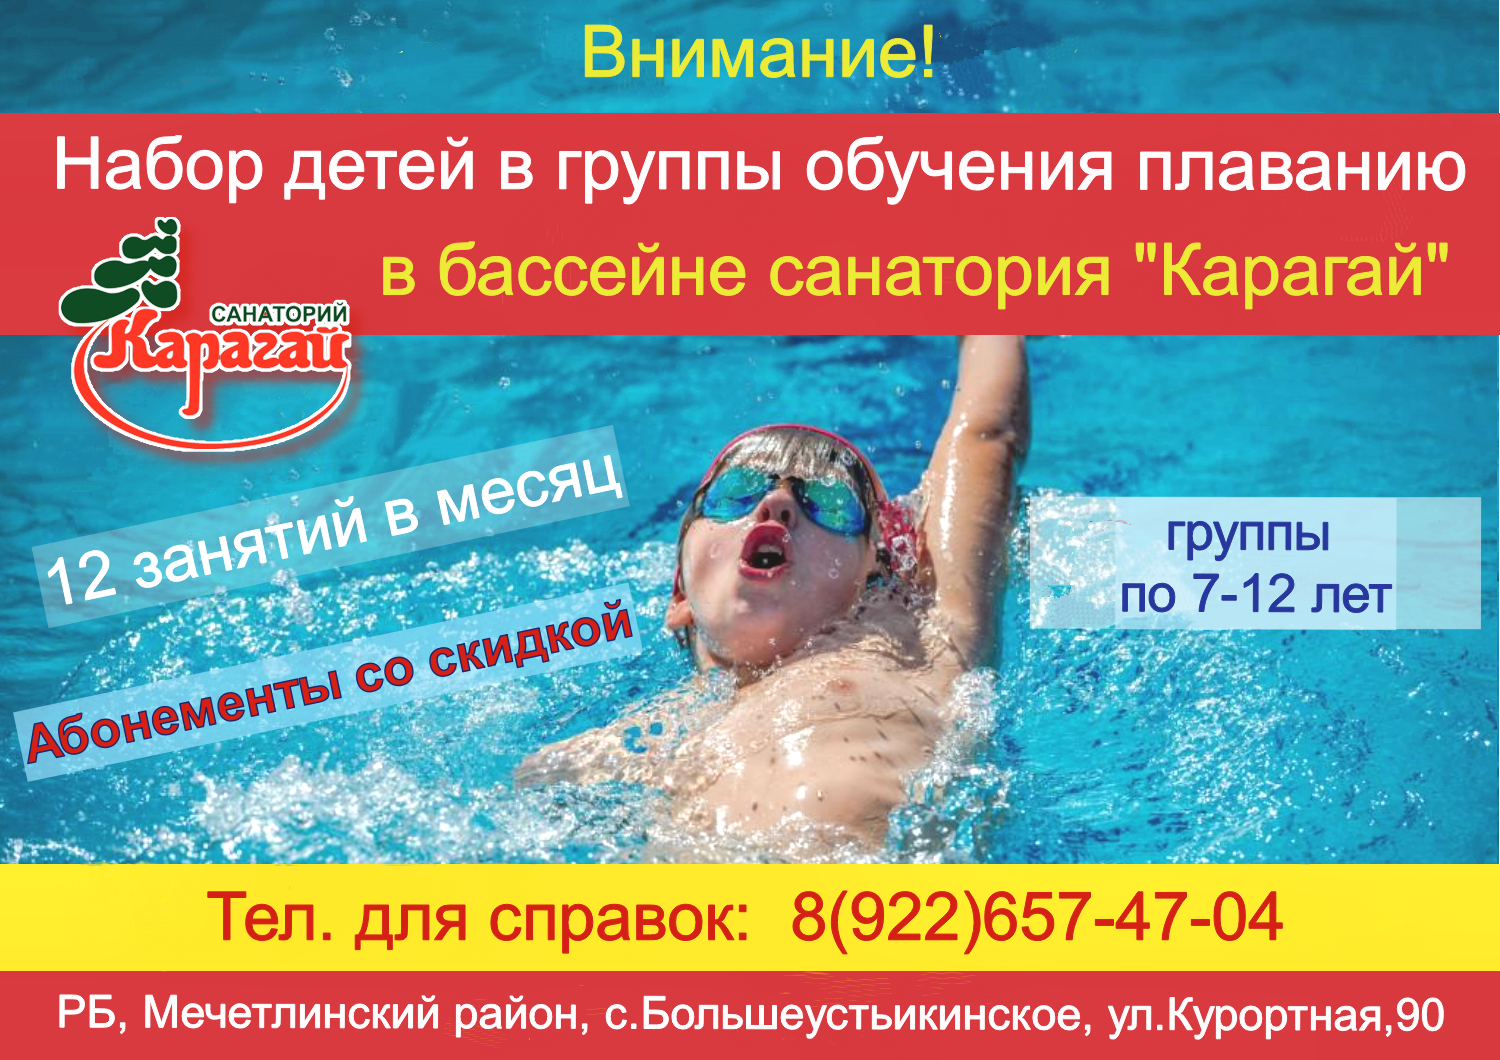 Оздоровительное плавание в бассейне санатория «Карагай». 